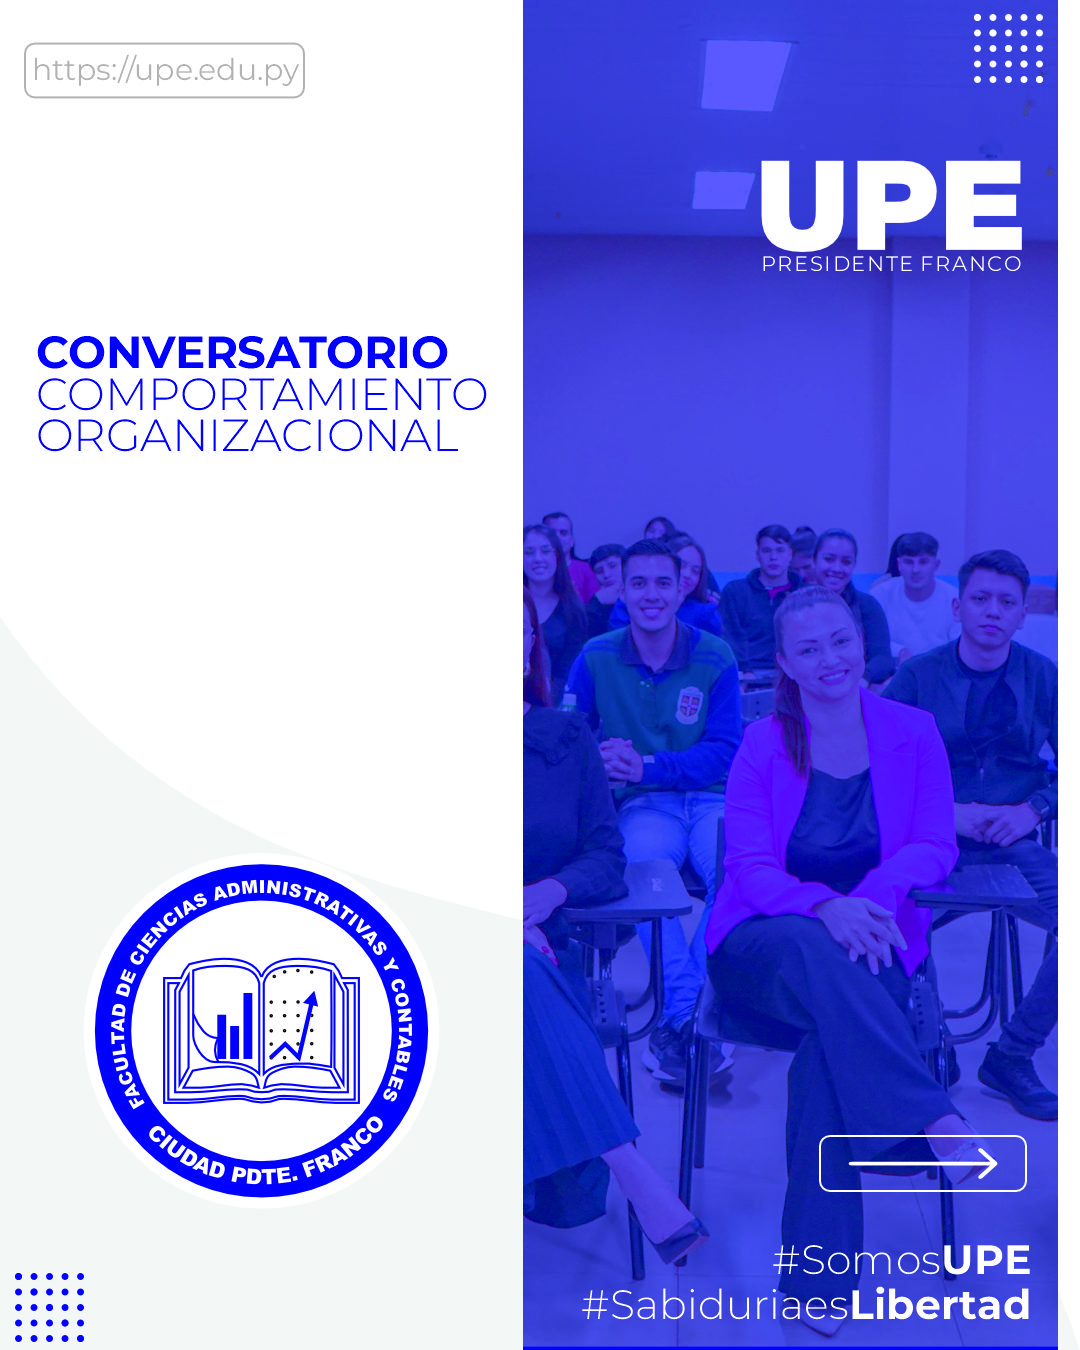 “Implicancias del Comportamiento Organizacional” - Conversatorio en  la UPE